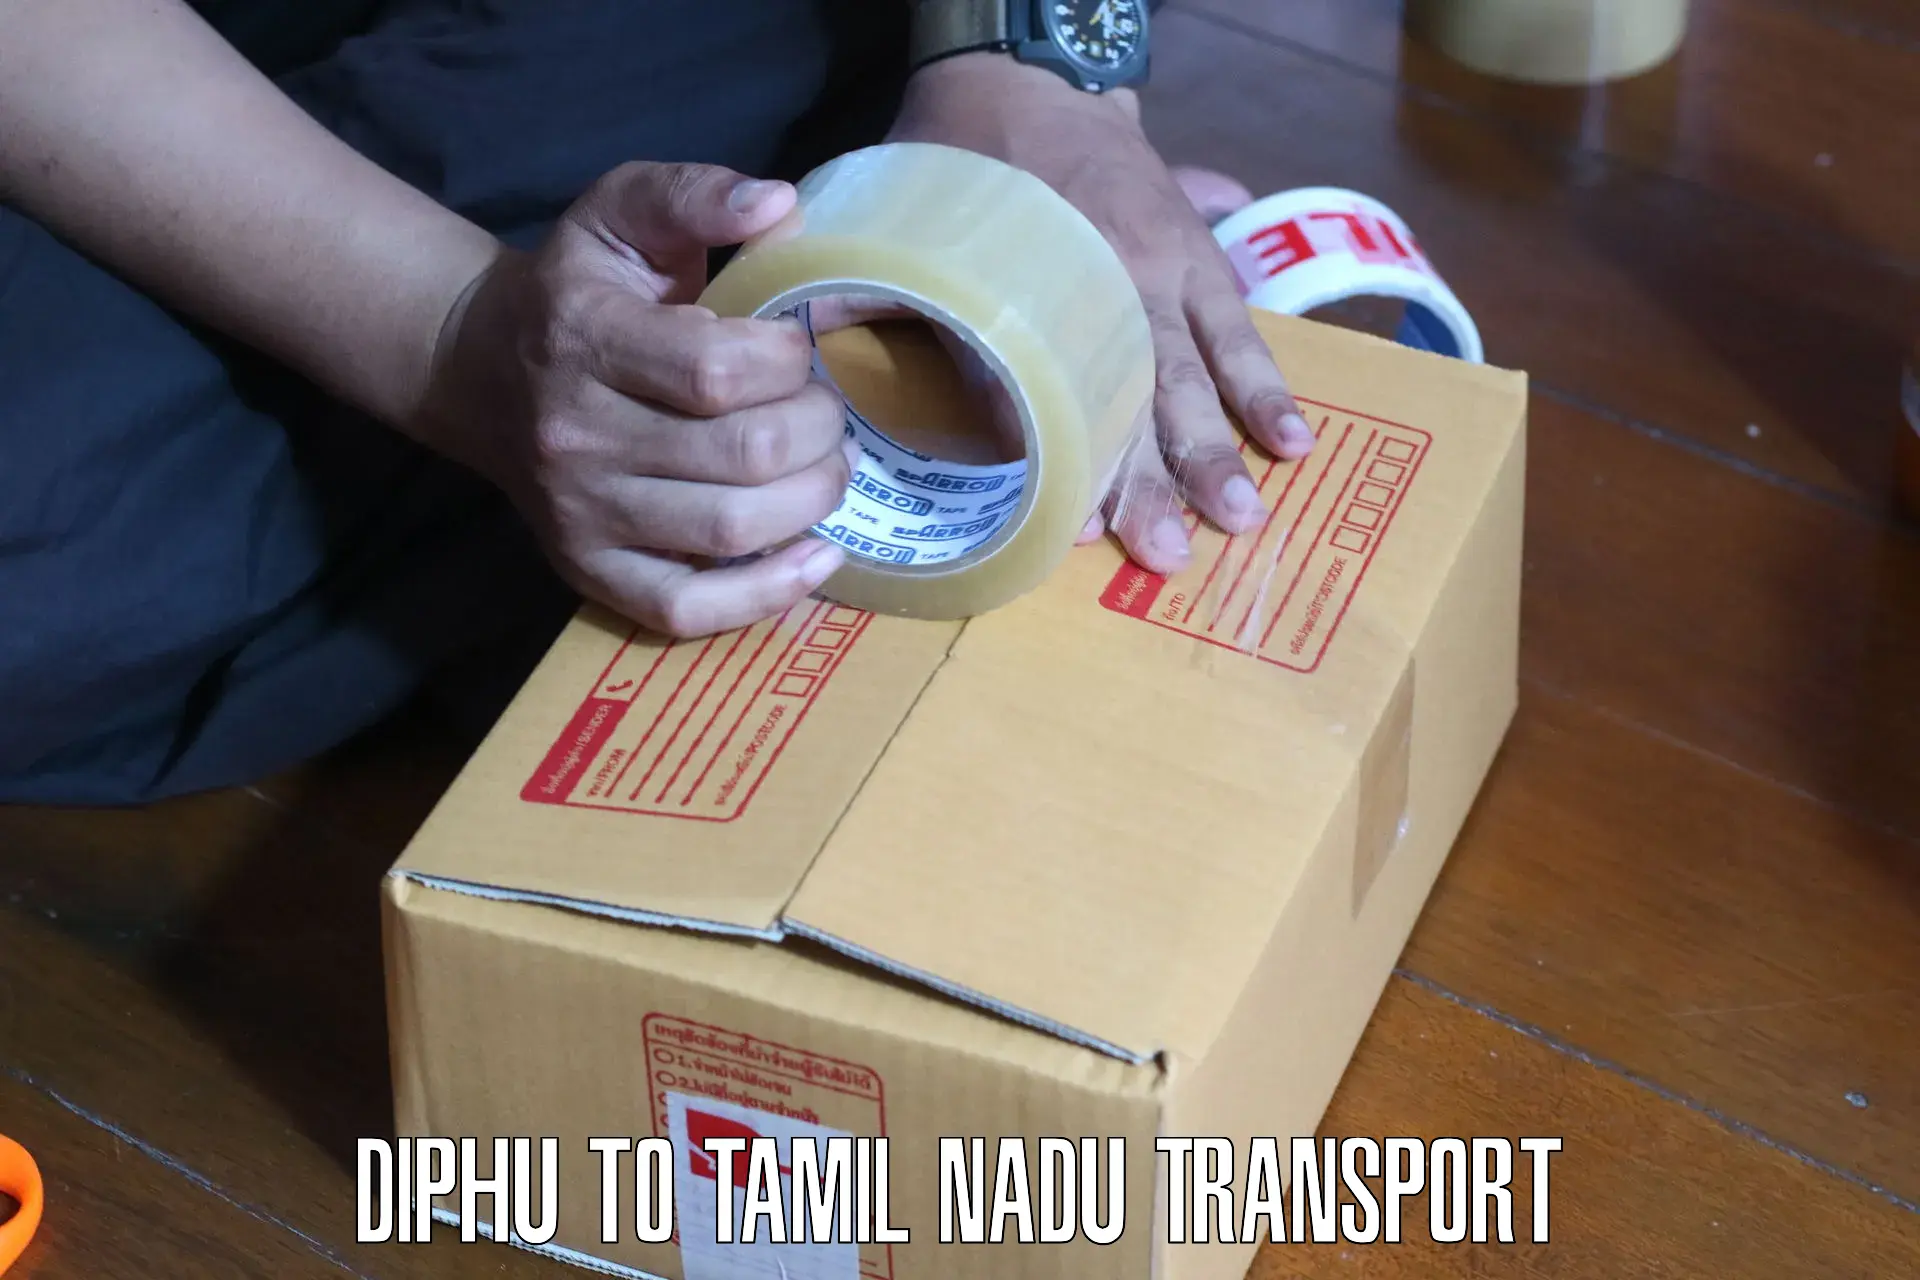 Pick up transport service Diphu to Narikkudi